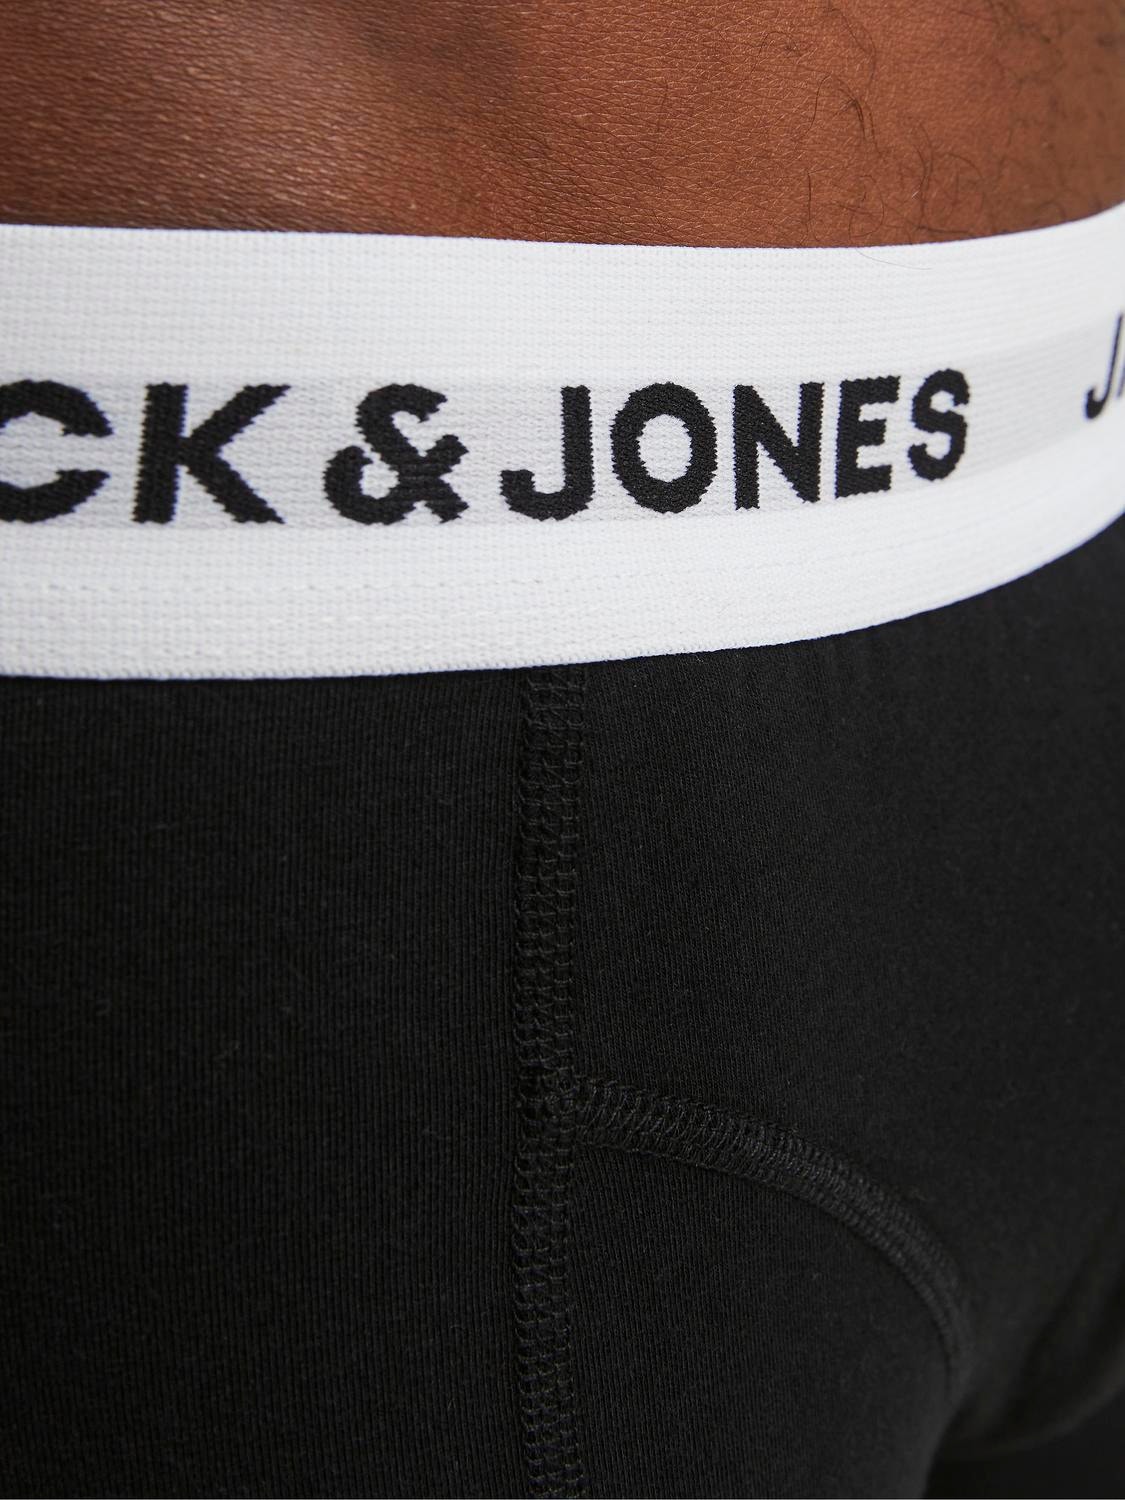 Jack & Jones 5er-pack Boxershorts -Black - 12254366